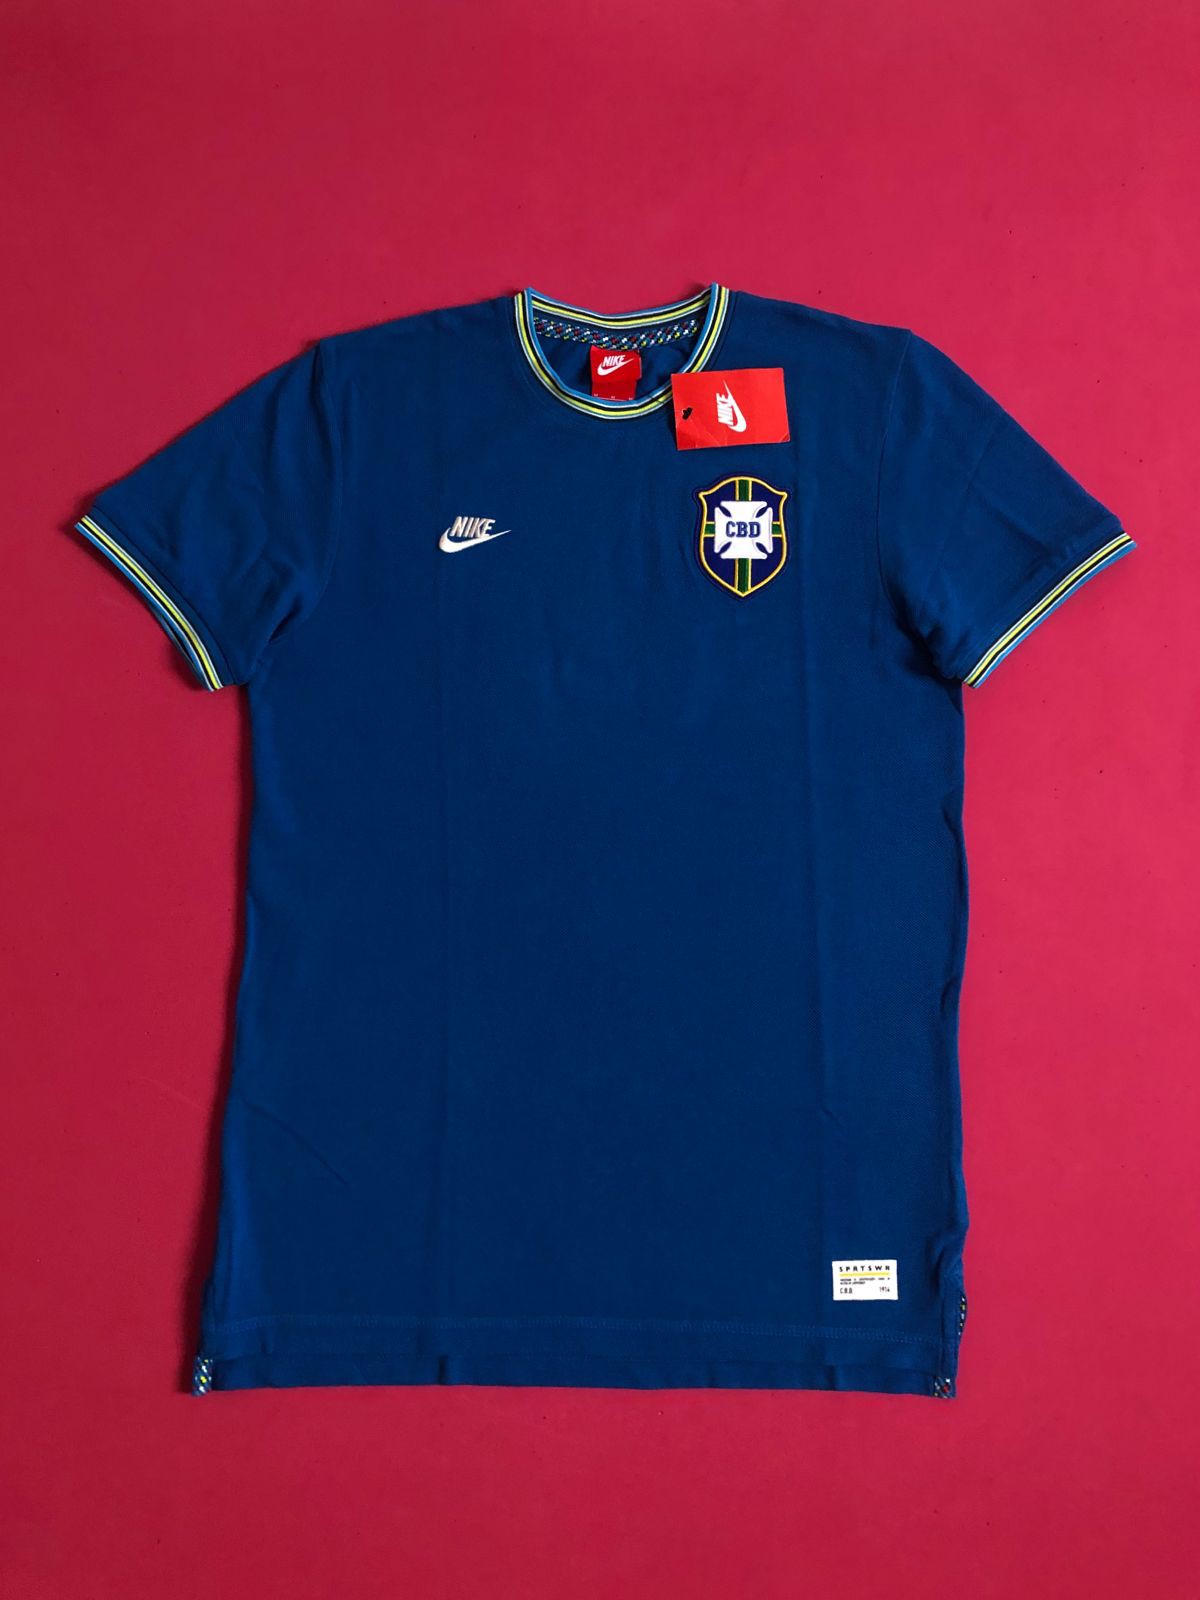 Camiseta Nike Sporstwear Seleção Brasileira Retrô 2013 Masculina - GNB Store